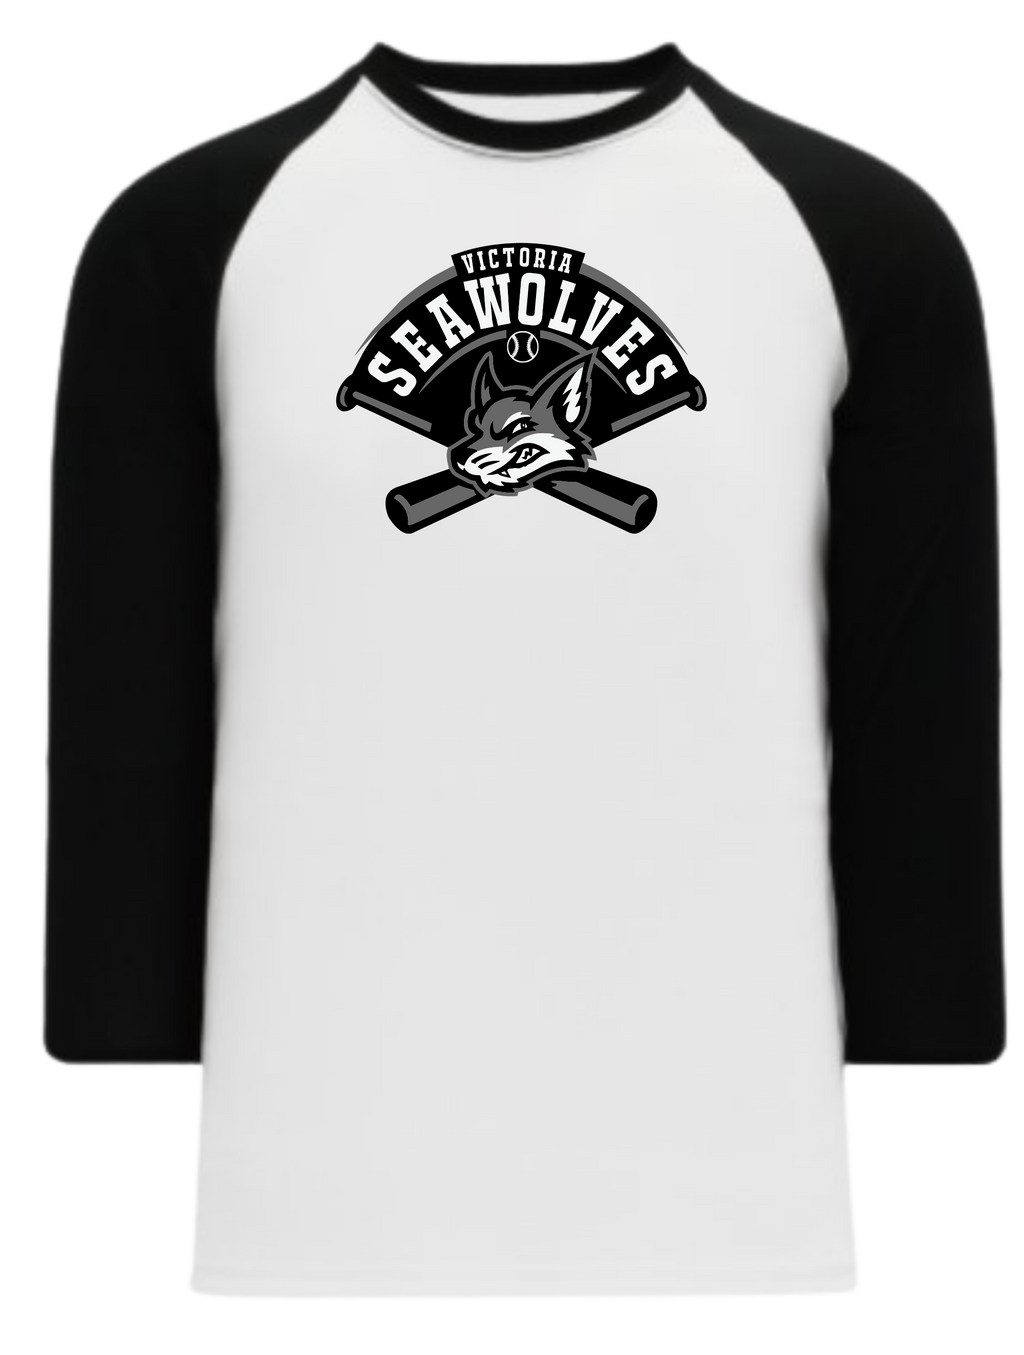 Victoria Seawolves Baseball 3/4 Sleeve Baseball Tshirt